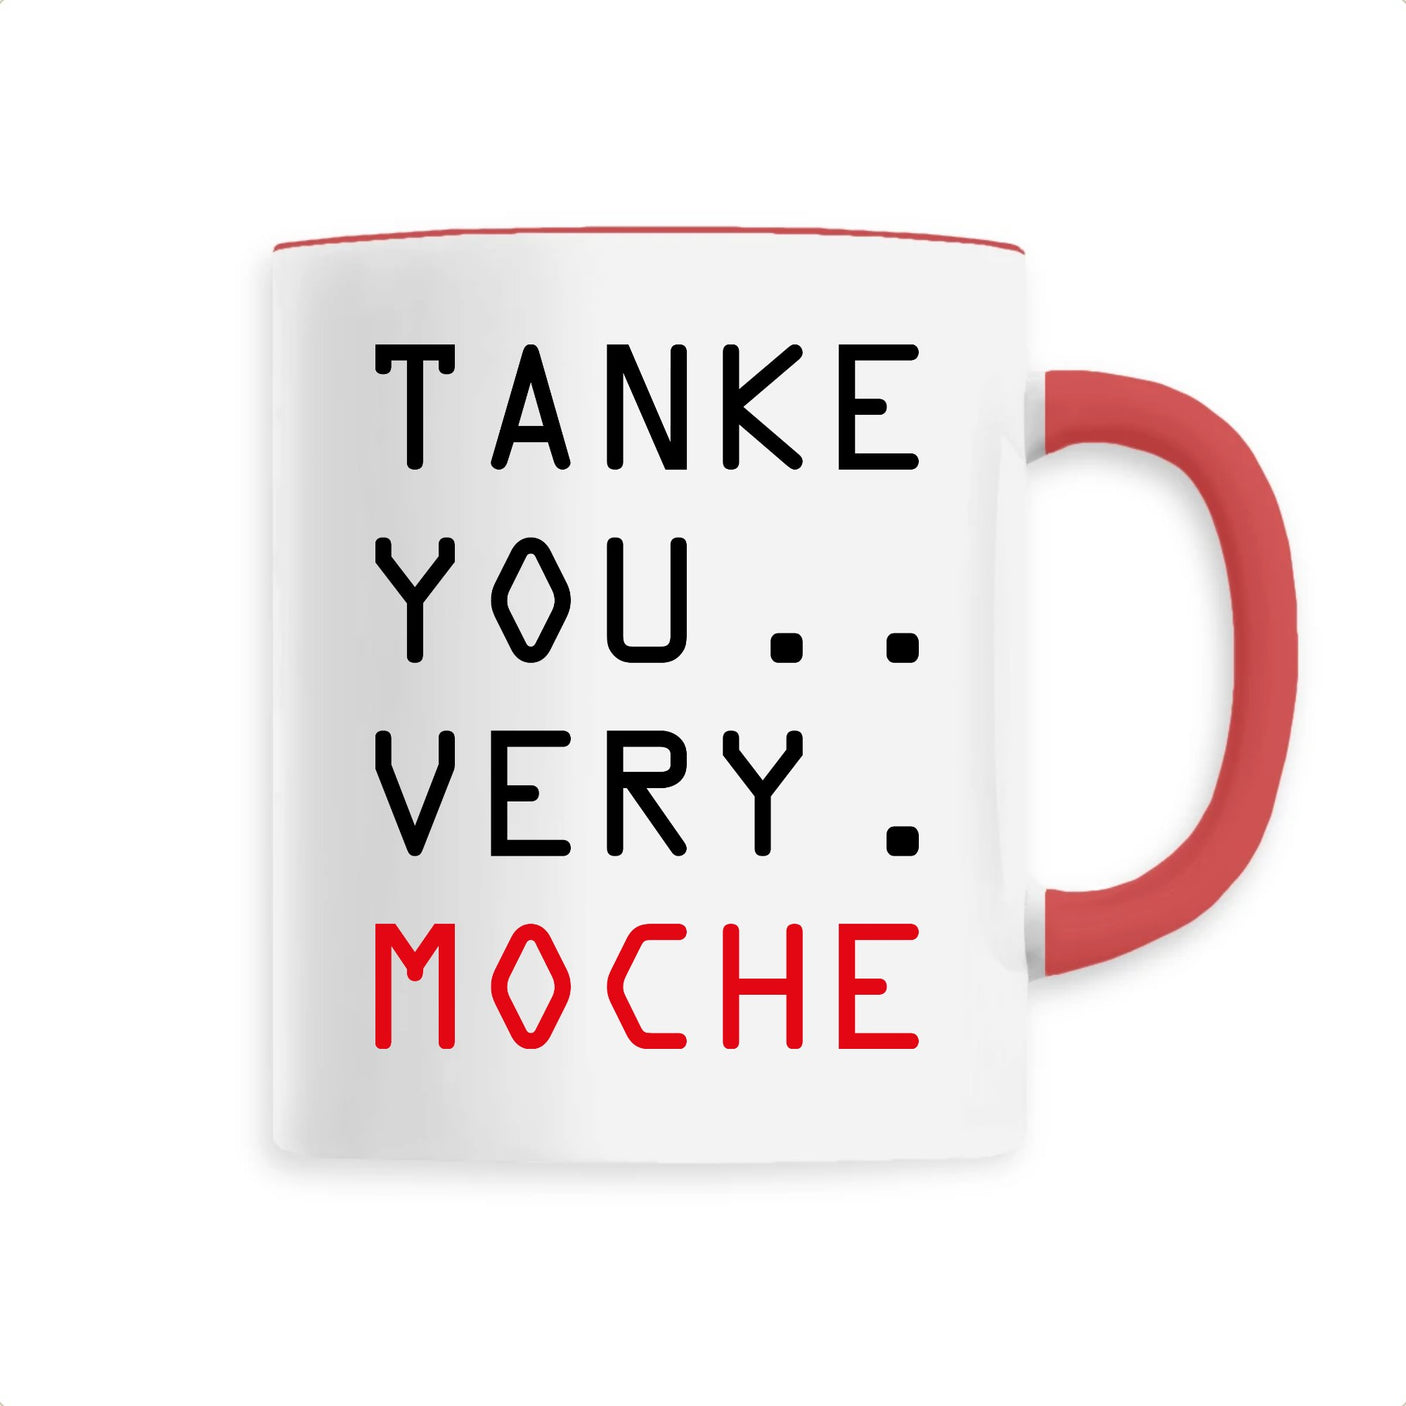 Mug Tanke you very moche 